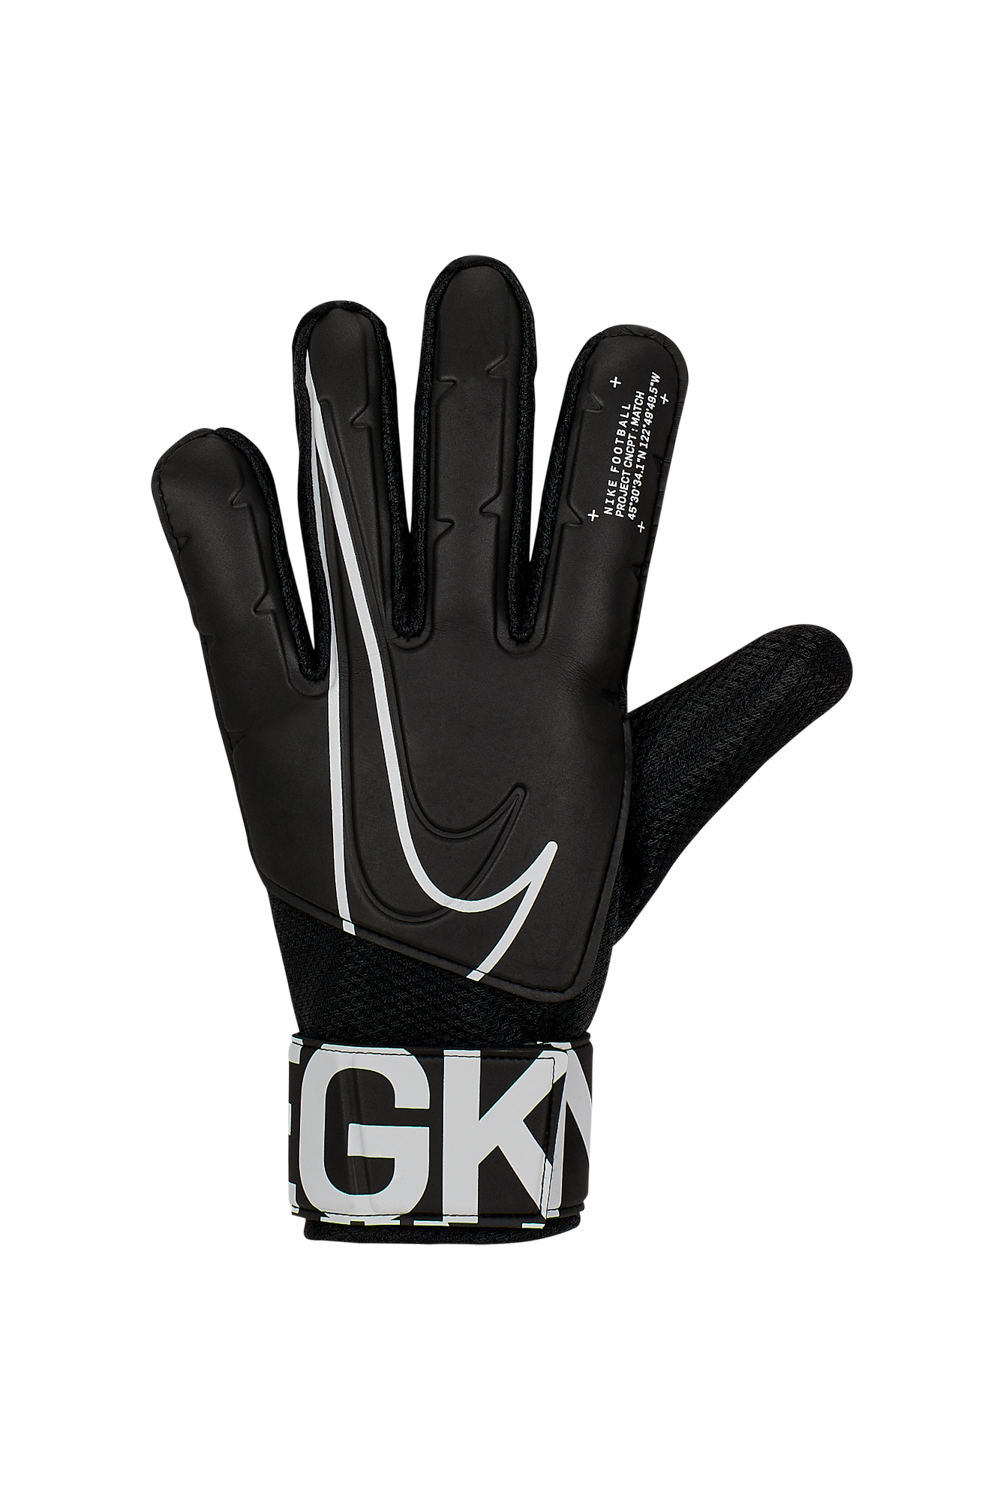 Ανδρικά/Αξεσουάρ/Αθλητικά Είδη/Εξοπλισμός NIKE - Γάντια τερματοφύλακα Nike GK MATCH-FA19 λευκά-μαύρα